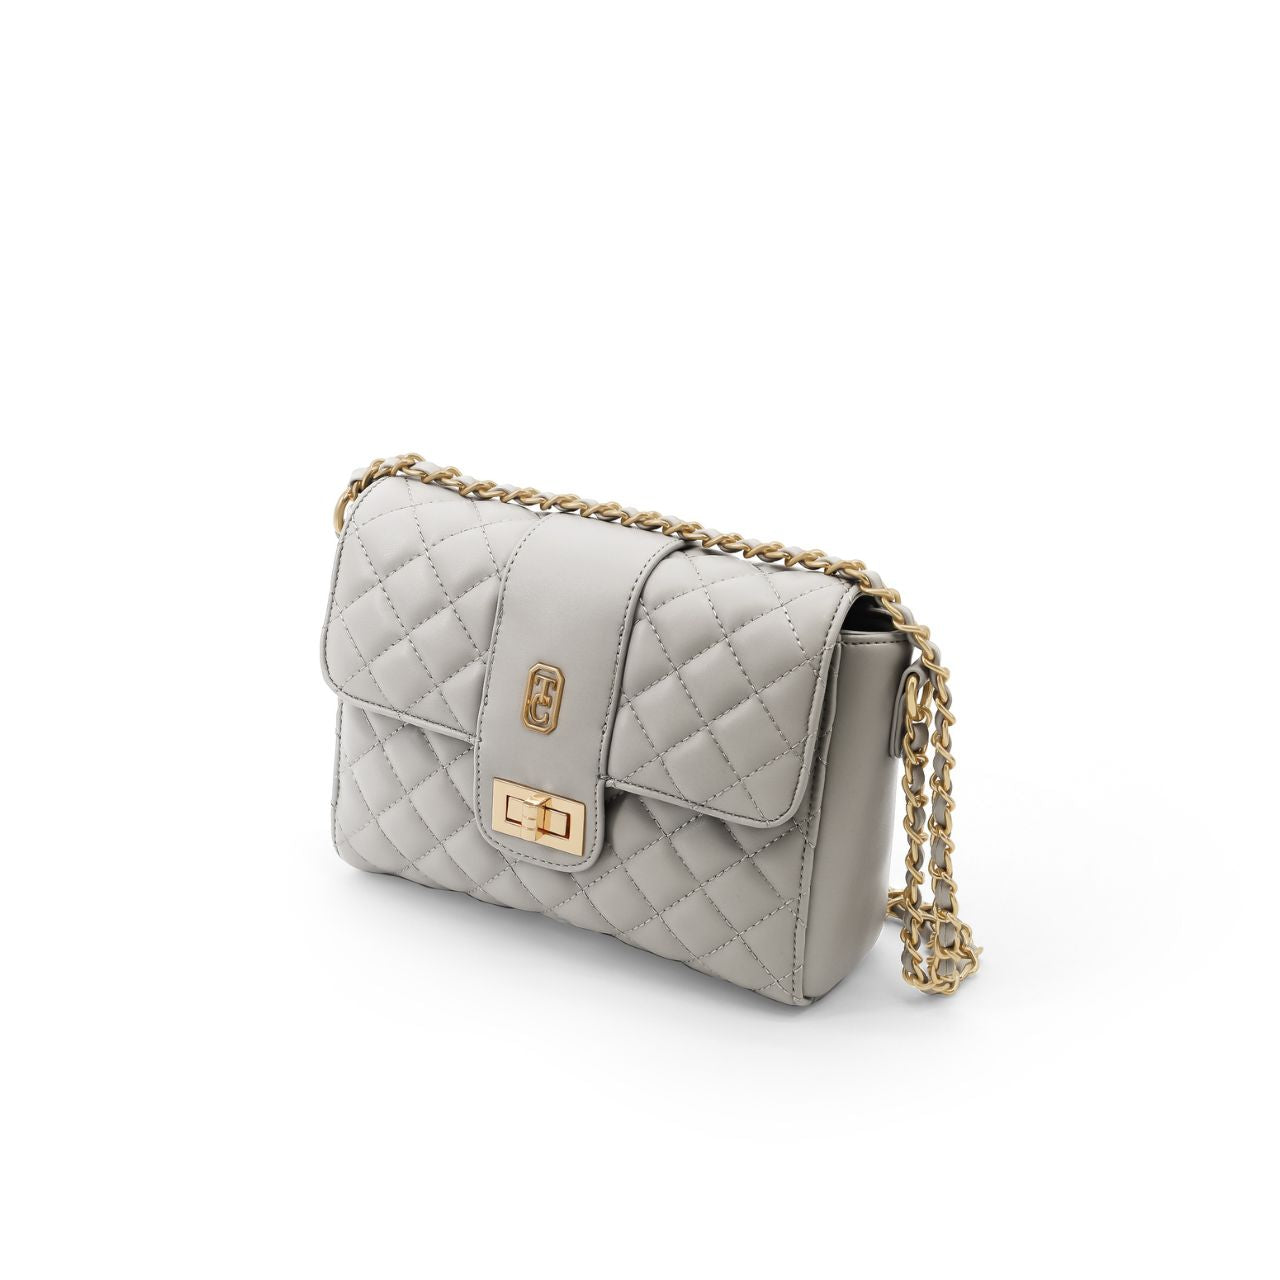 Bella Handbag - Grey by Tipperary Crystal  Bella Handbag - Grey